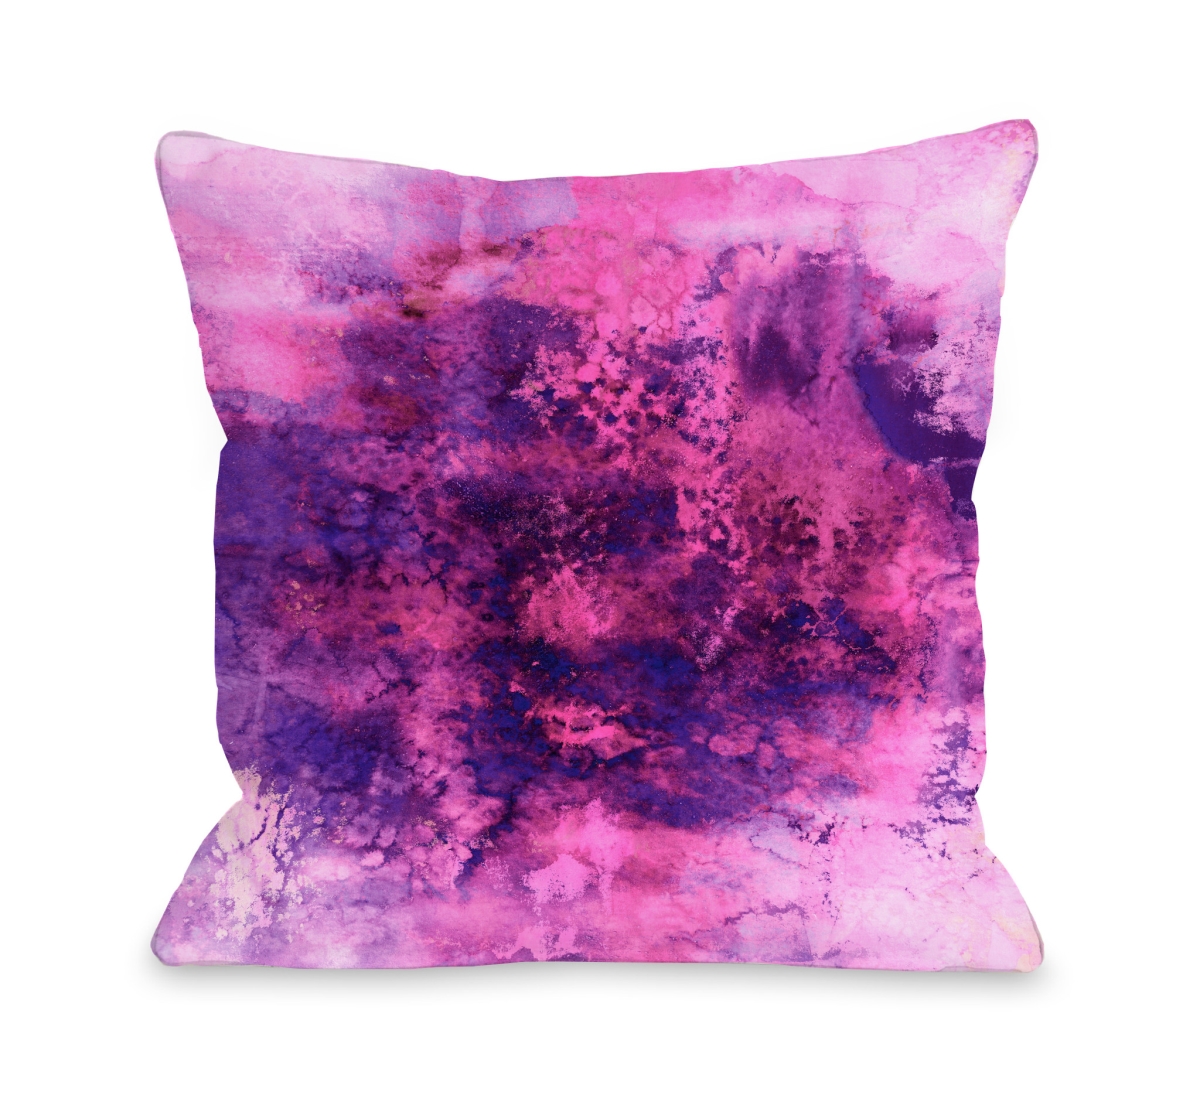 82791pl18 Epoch 5 Pillow By Julia Di Sano, Pink